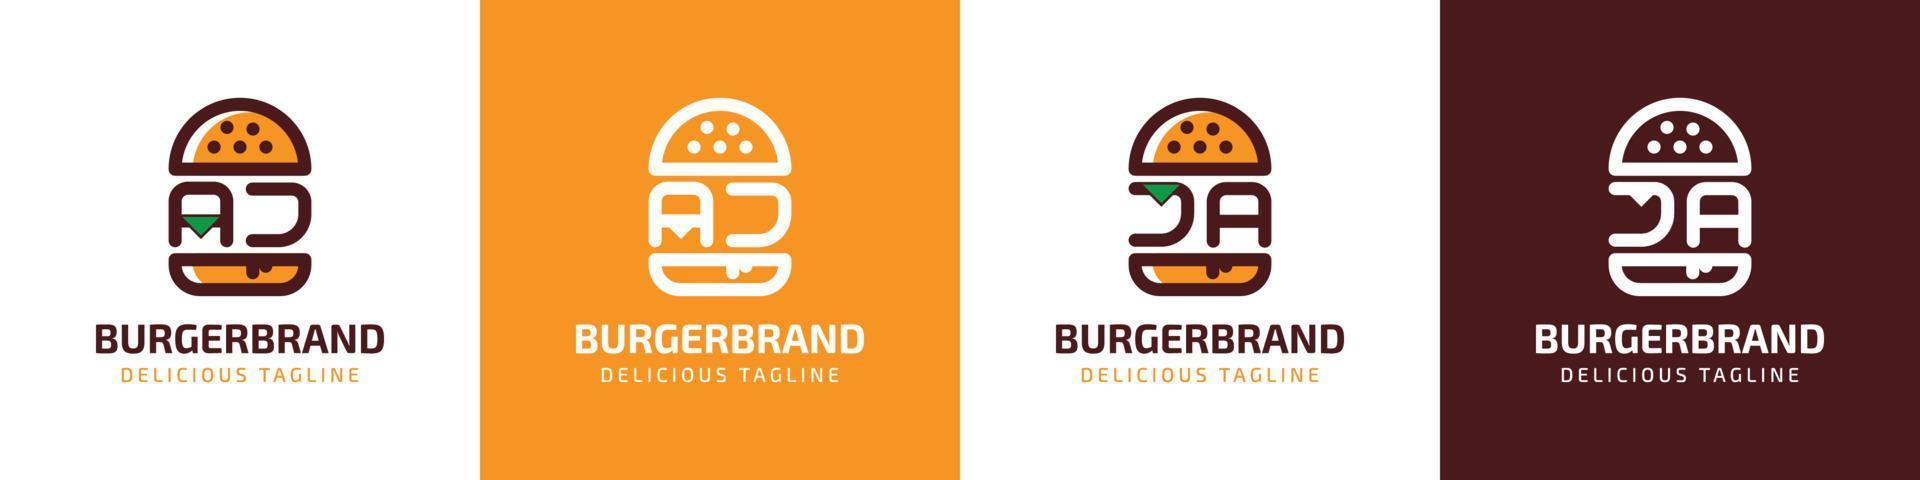 Logotipo de la letra aj y ja burger, adecuado para cualquier negocio relacionado con la hamburguesa con las iniciales aj o ja. vector